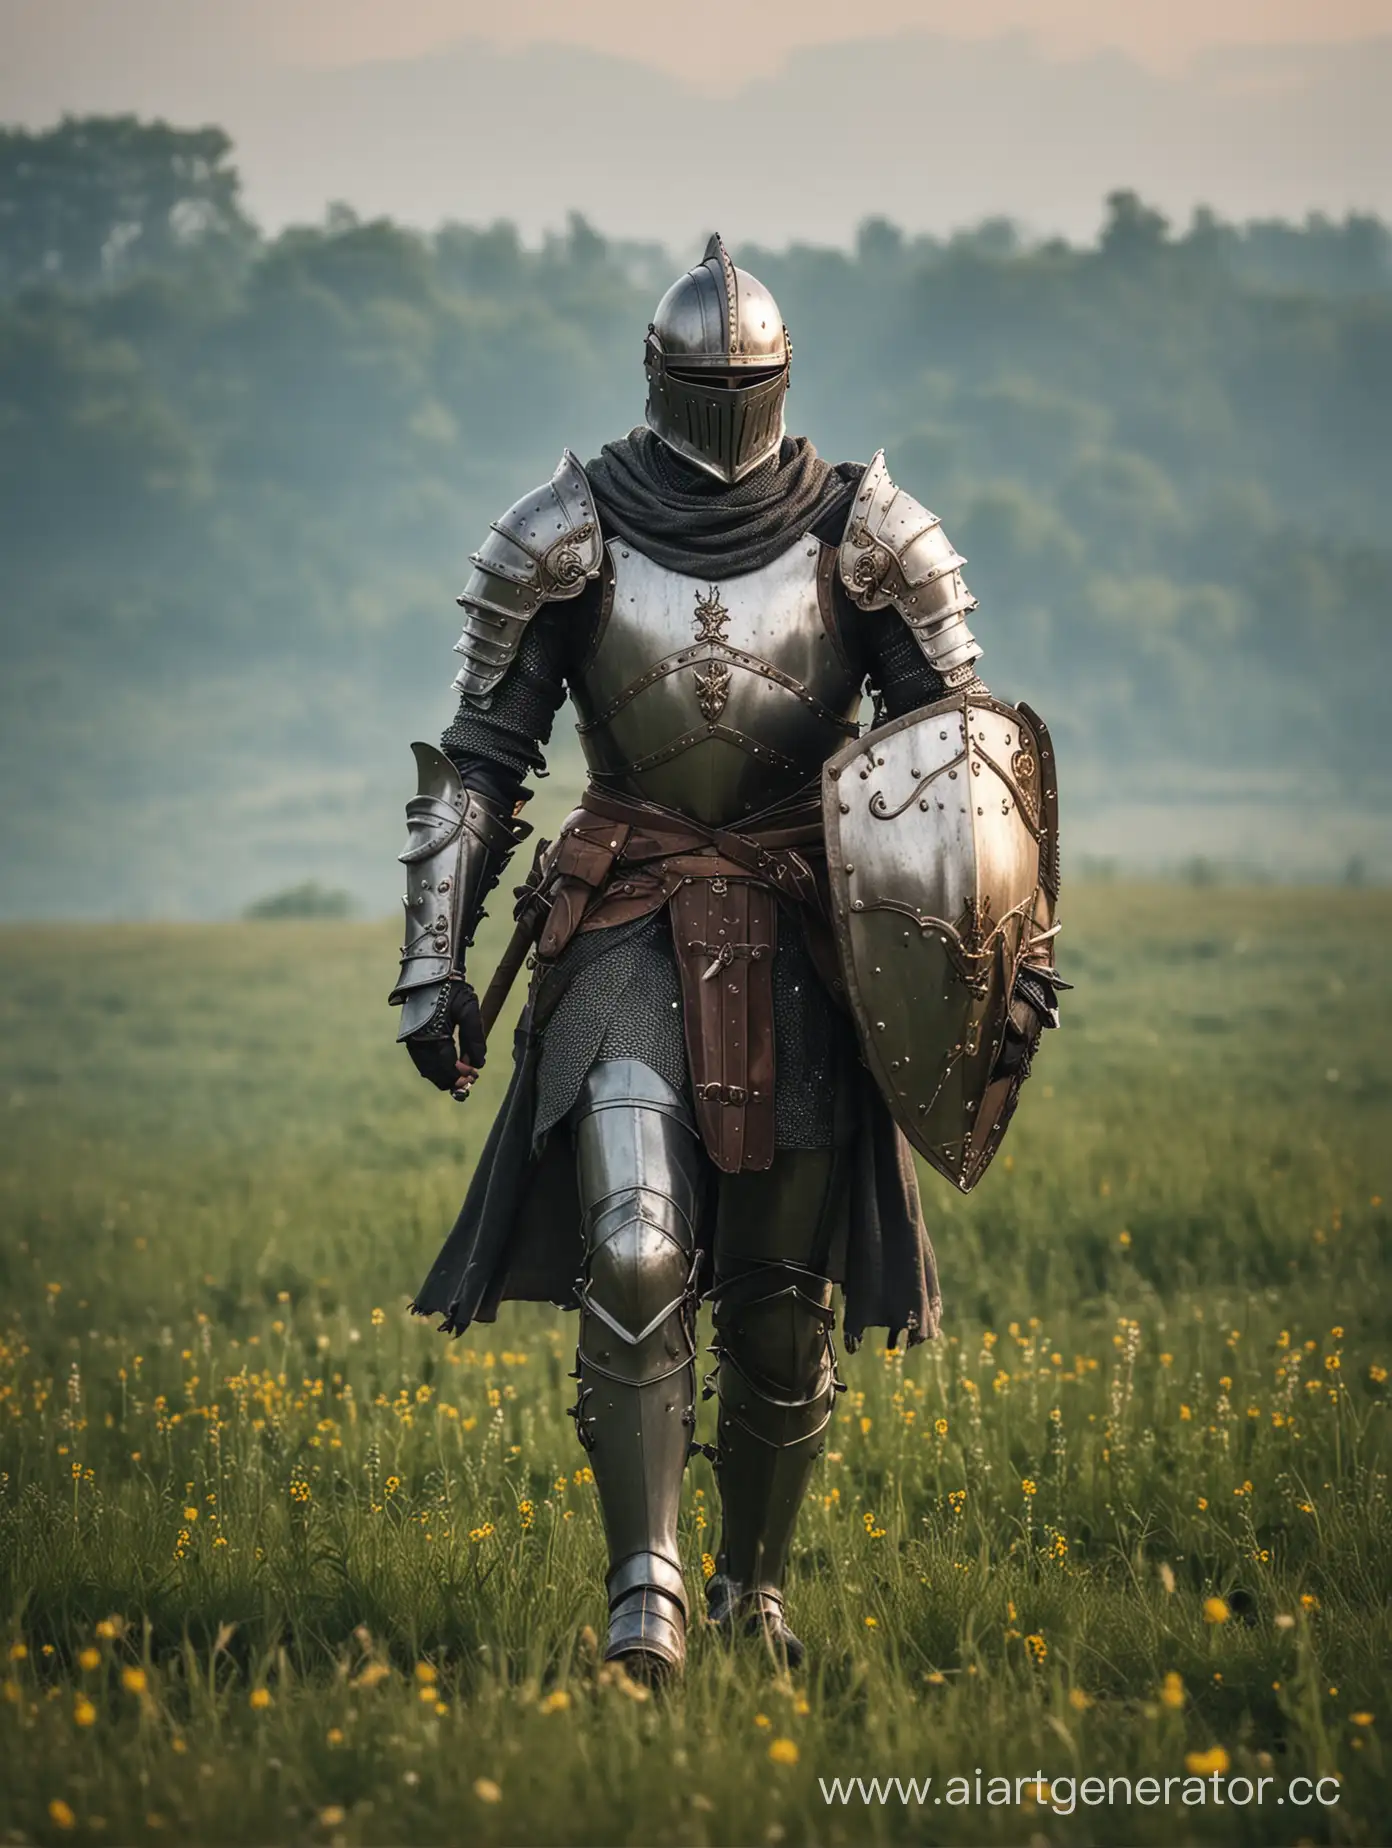 Knight-in-Armor-Roaming-Wild-Fields